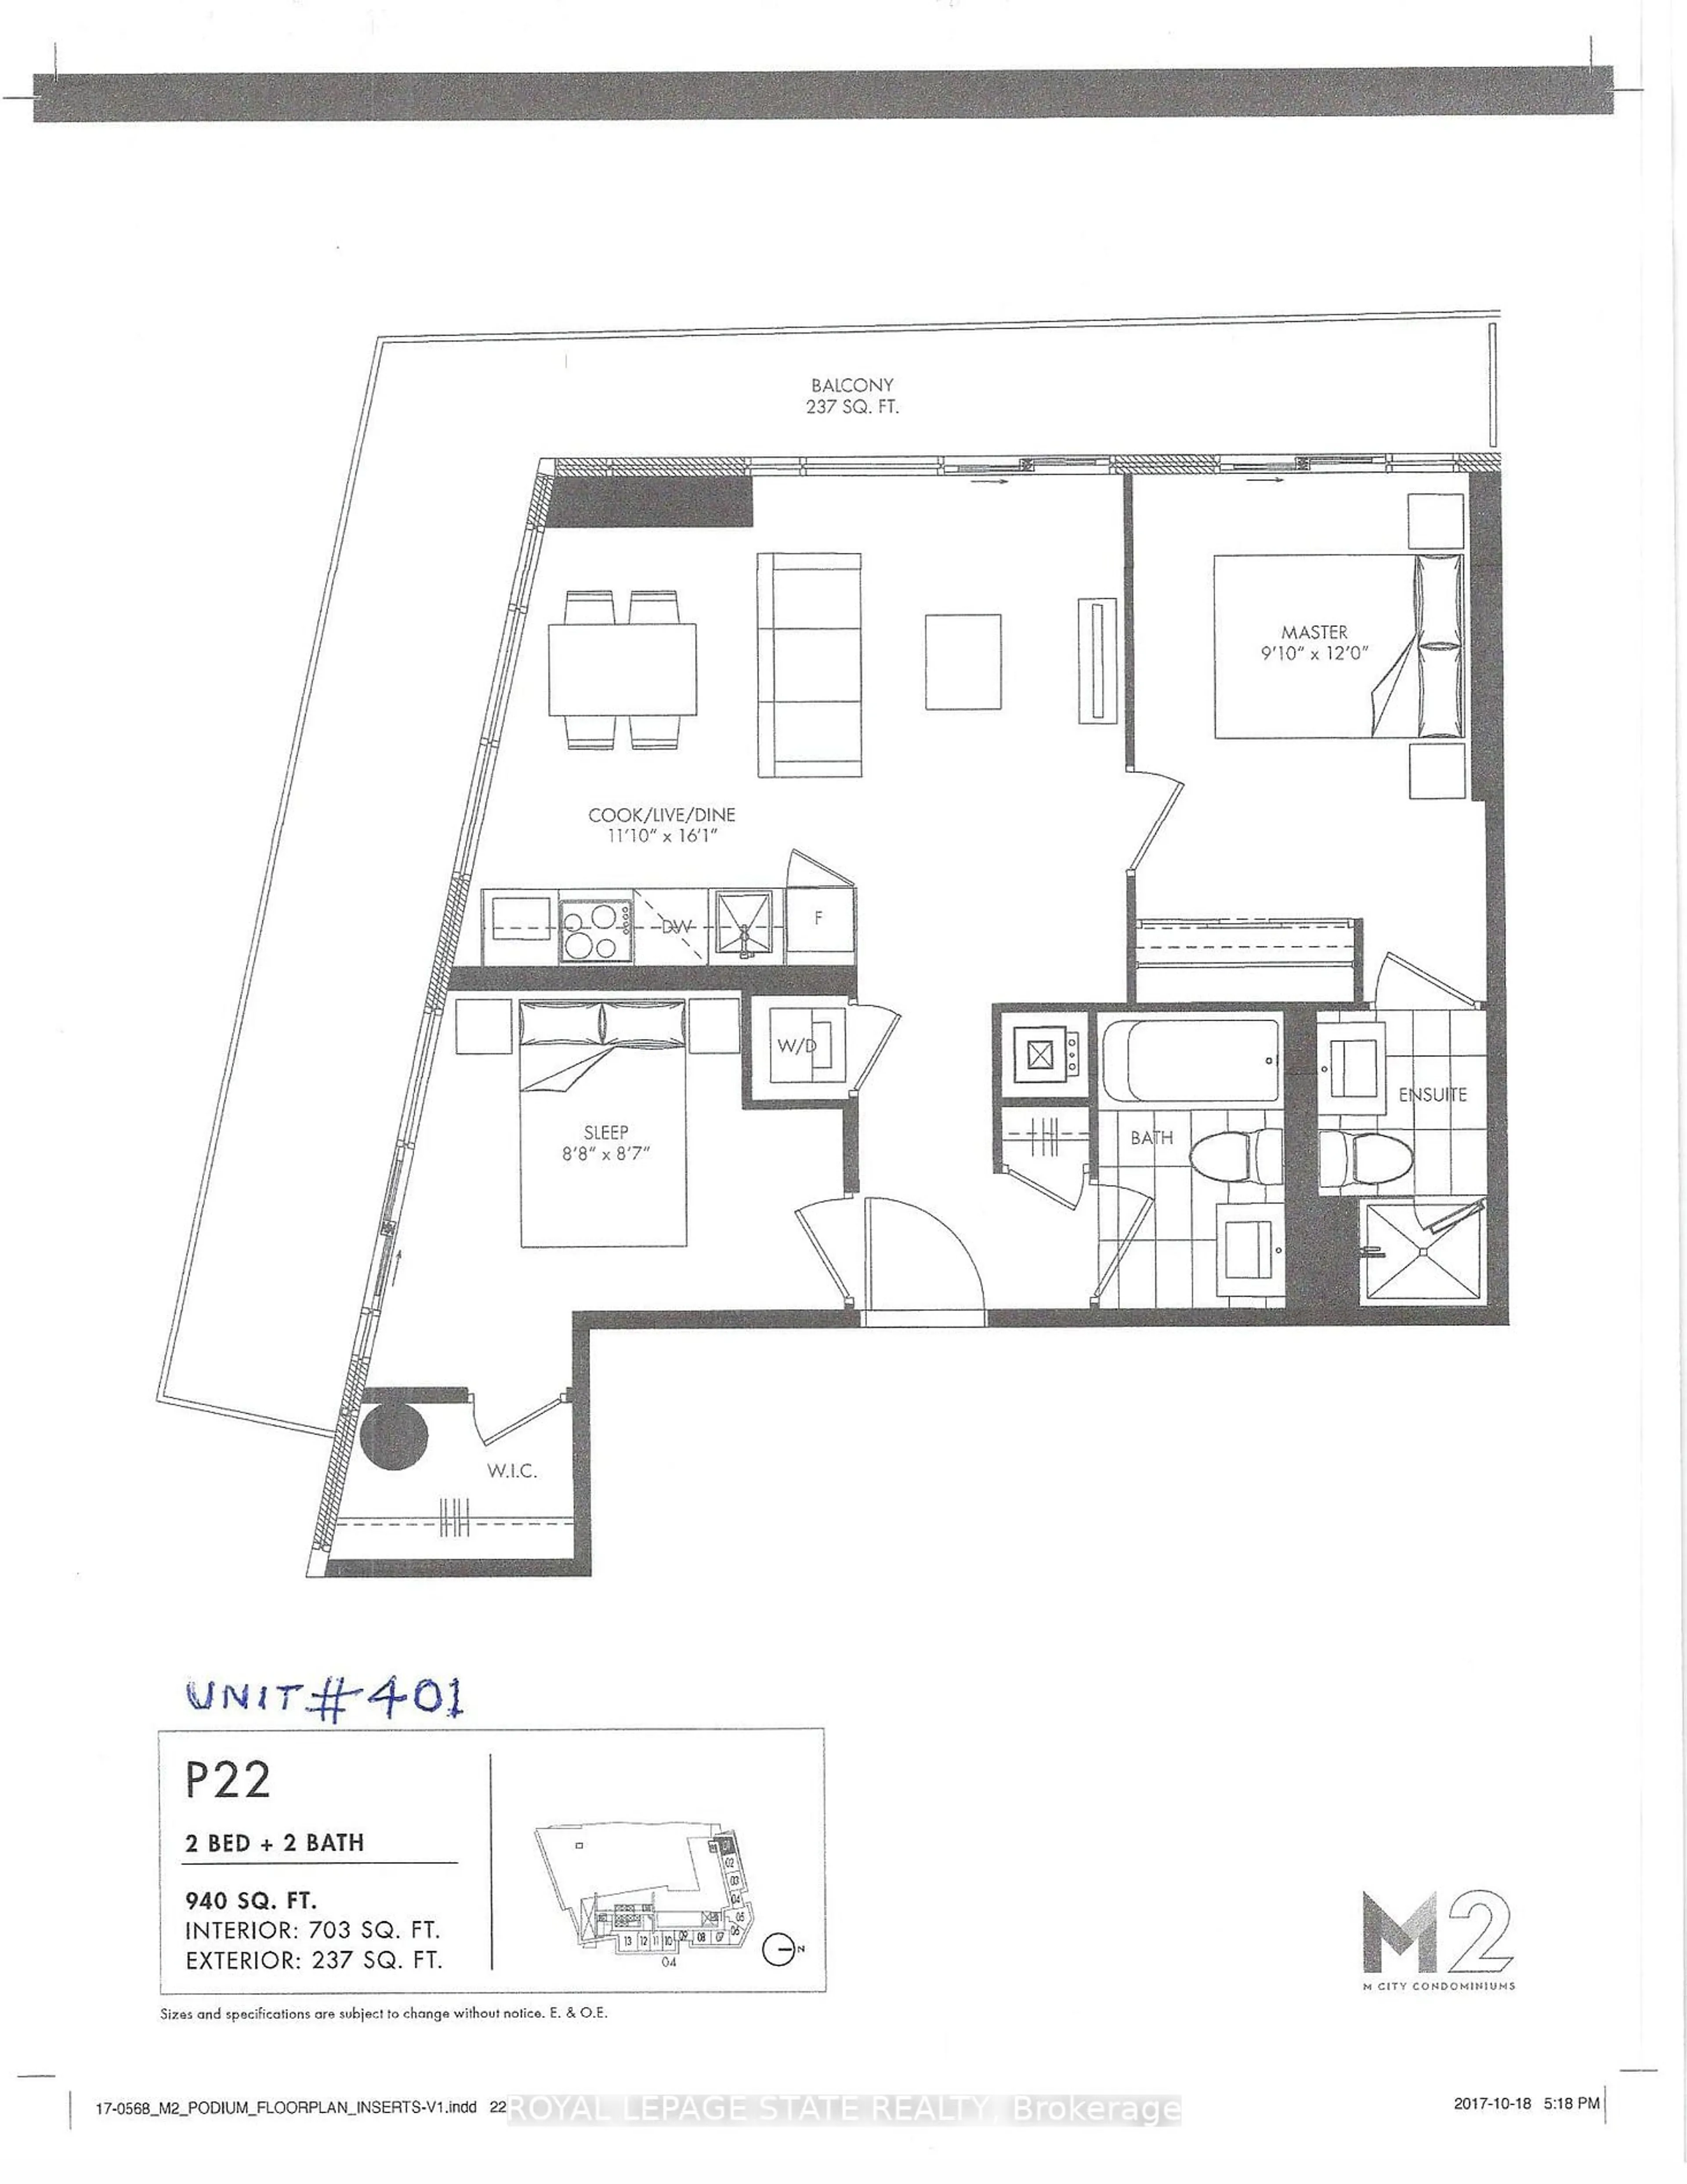 Floor plan for 3883 Quartz Rd #Unit401, Mississauga Ontario L5B 4M6